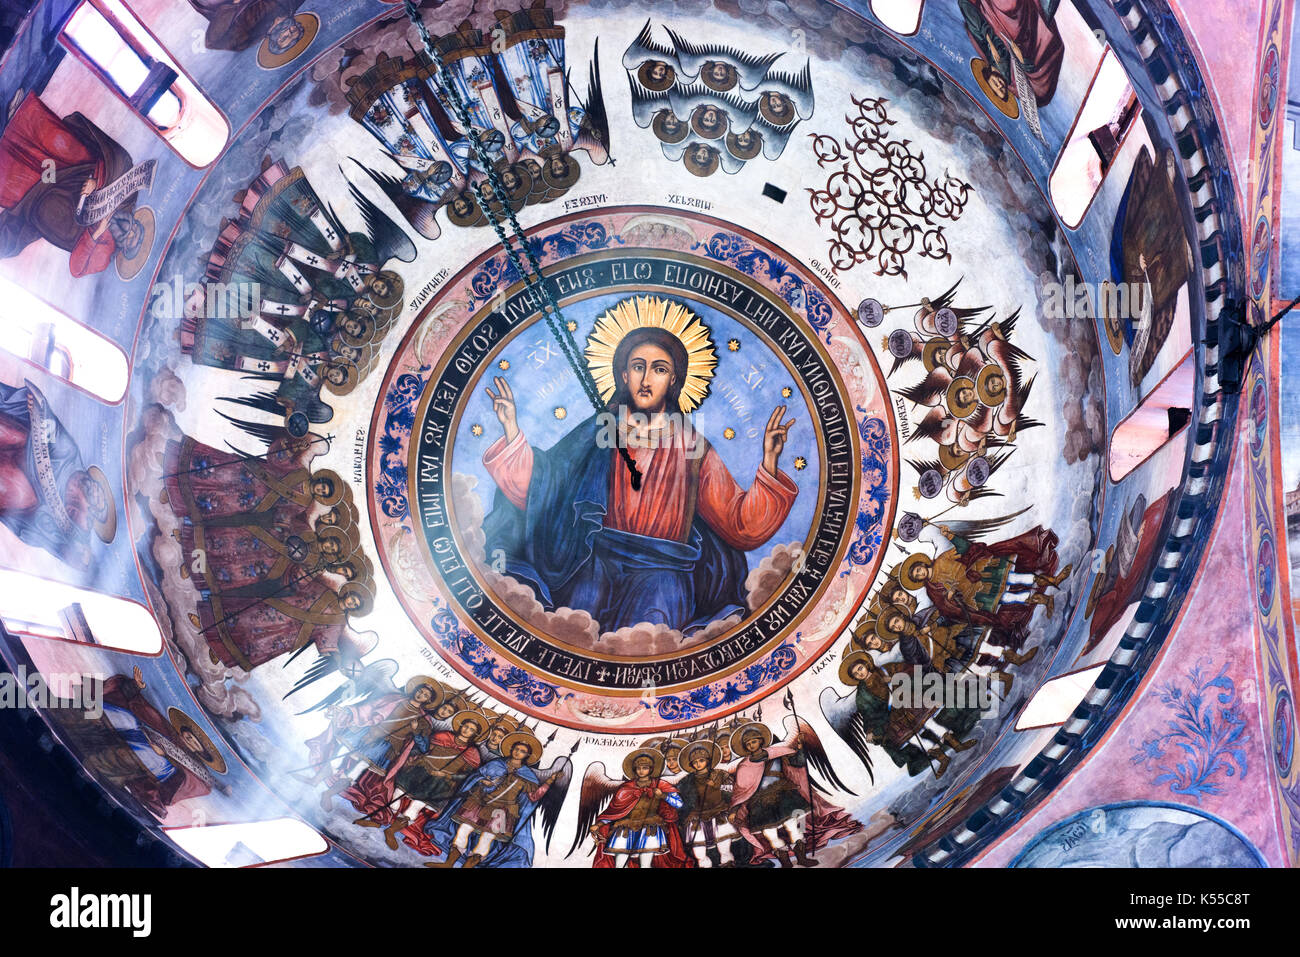 Auf der Suche nach oben in die Kuppel des Bachkovo Kloster, eines der ältesten Orthodoxen Klöster in Europa, Witz eine Welle von Licht. Stockfoto